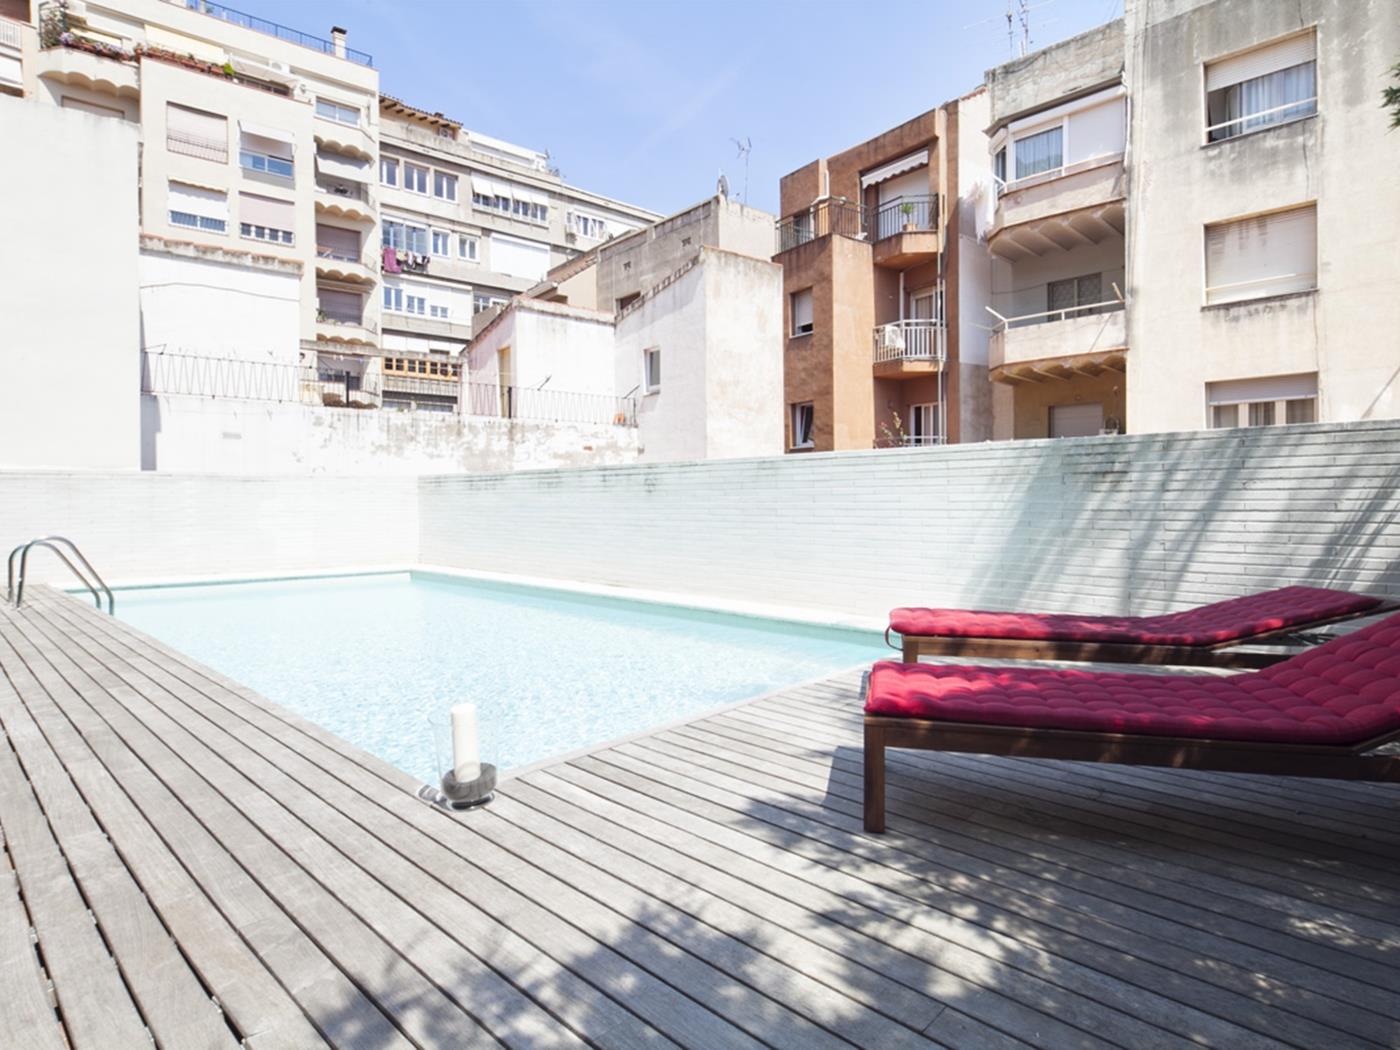 شقة علوية في غراسيا ل 8 اشخاص مع تراس وبركة - My Space Barcelona شقة